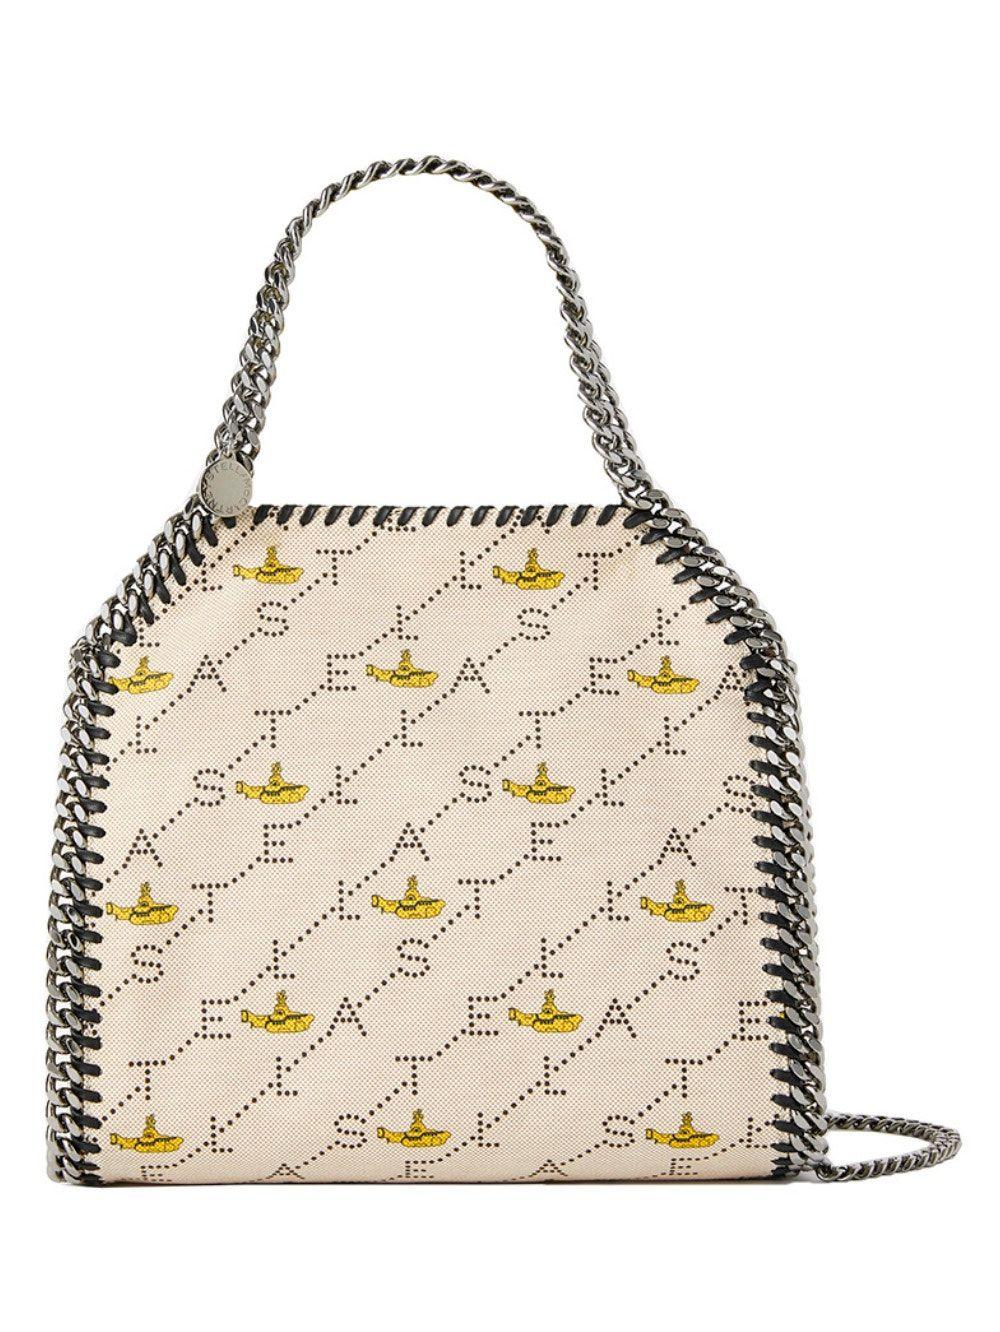 15+ Stella McCartney Bags (plus really cute outfit ideas) - LynSire |  Fashion, Women bags fashion, Stella mccartney bag